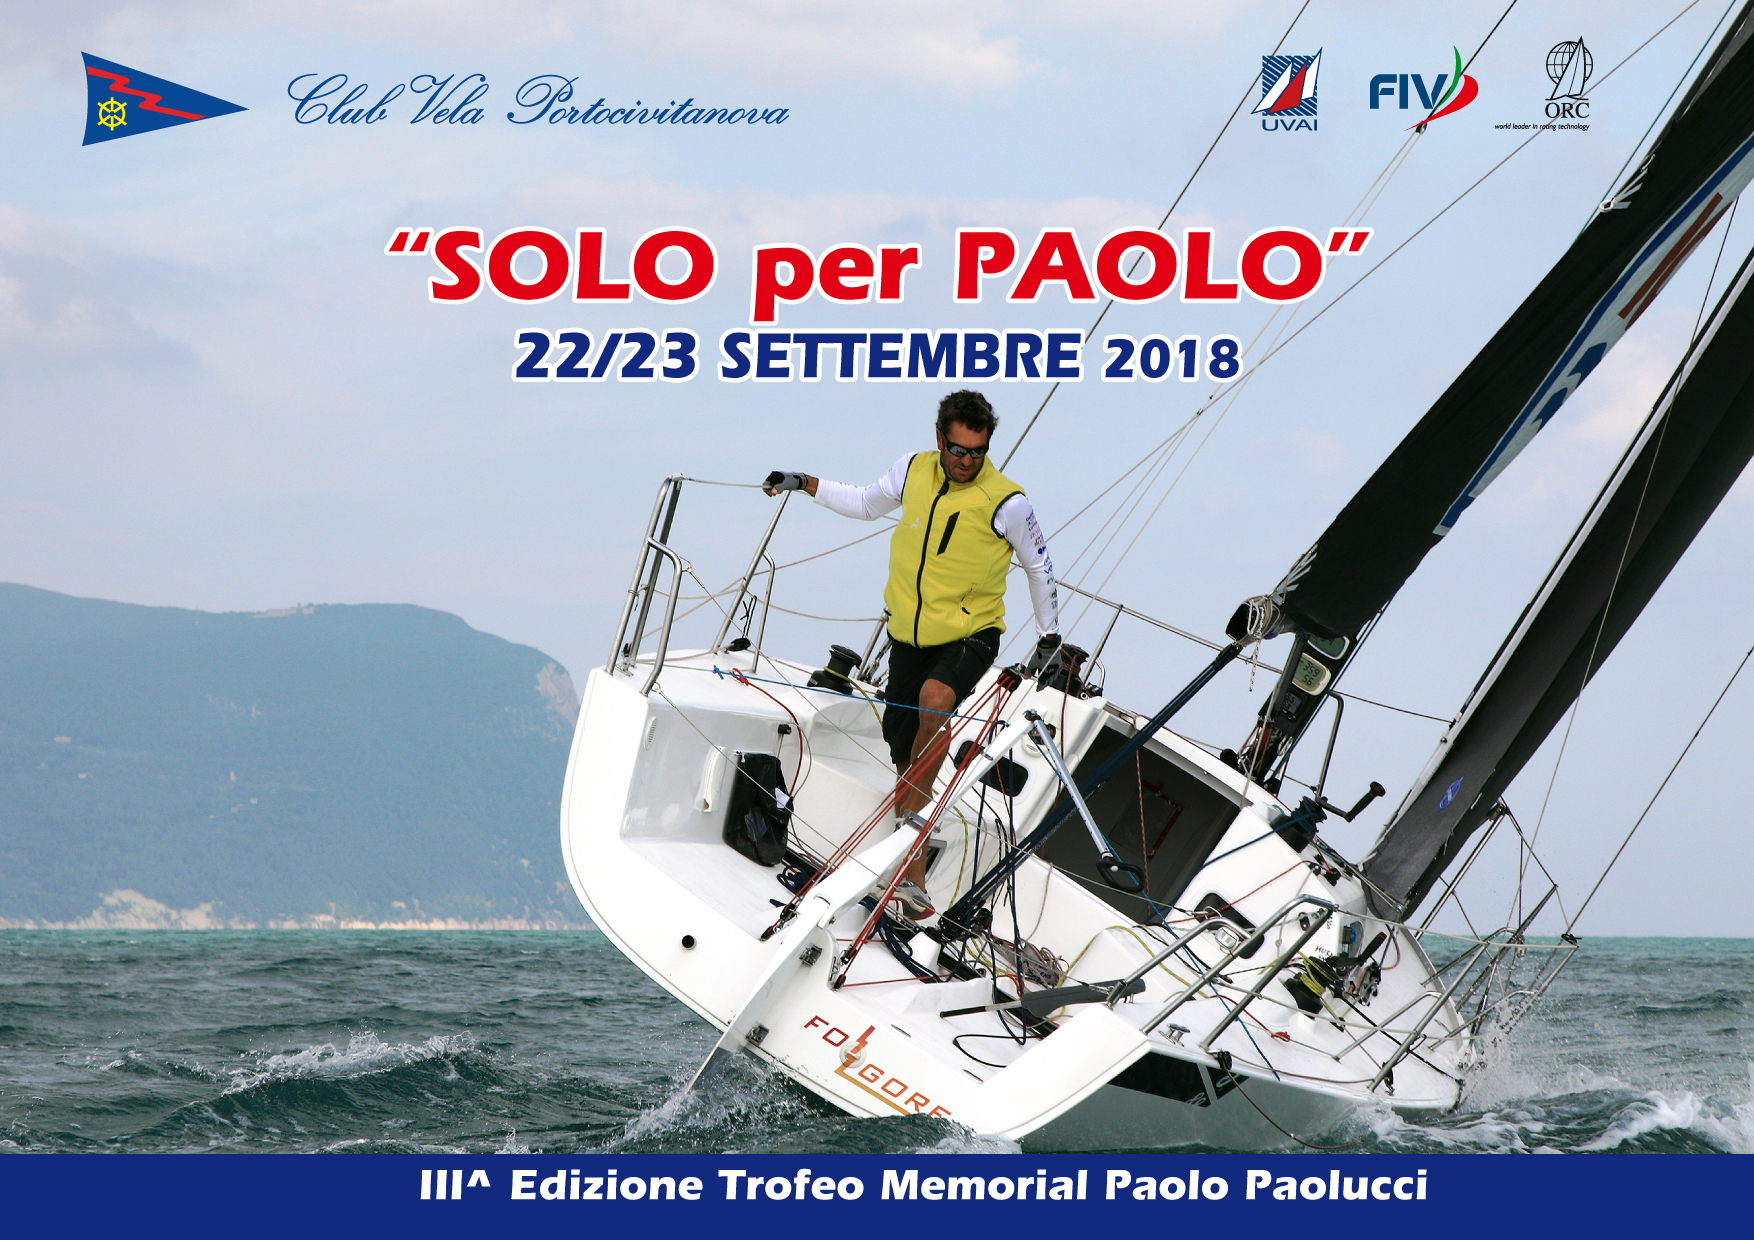 22 / 23 settembre – “SOLO PER PAOLO” regata in solitario (valida Palo D’Oro 2018)